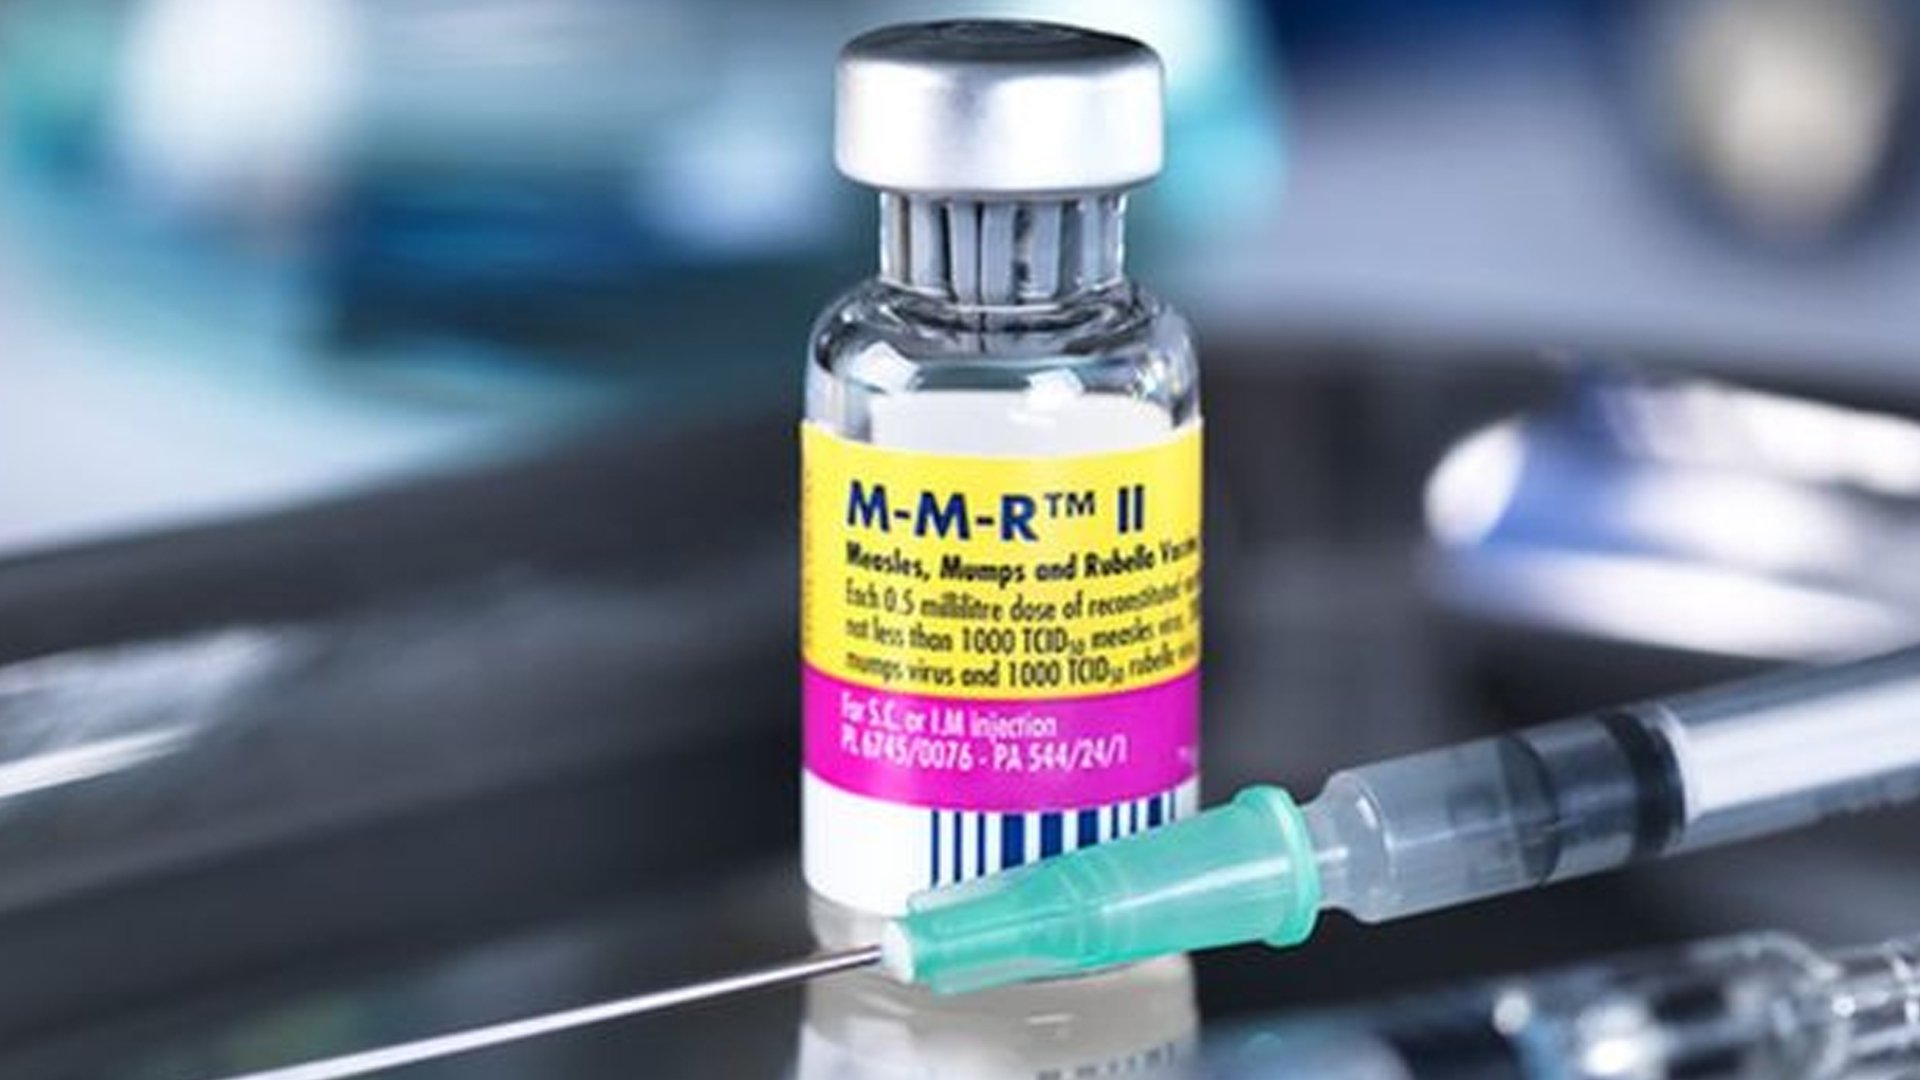 Краснушная вакцина. Вакцина корь краснуха паротит вакцина. MMR 2 вакцина. Вакцина MMR корь краснуха паротит. Вакцина м-м-р II.